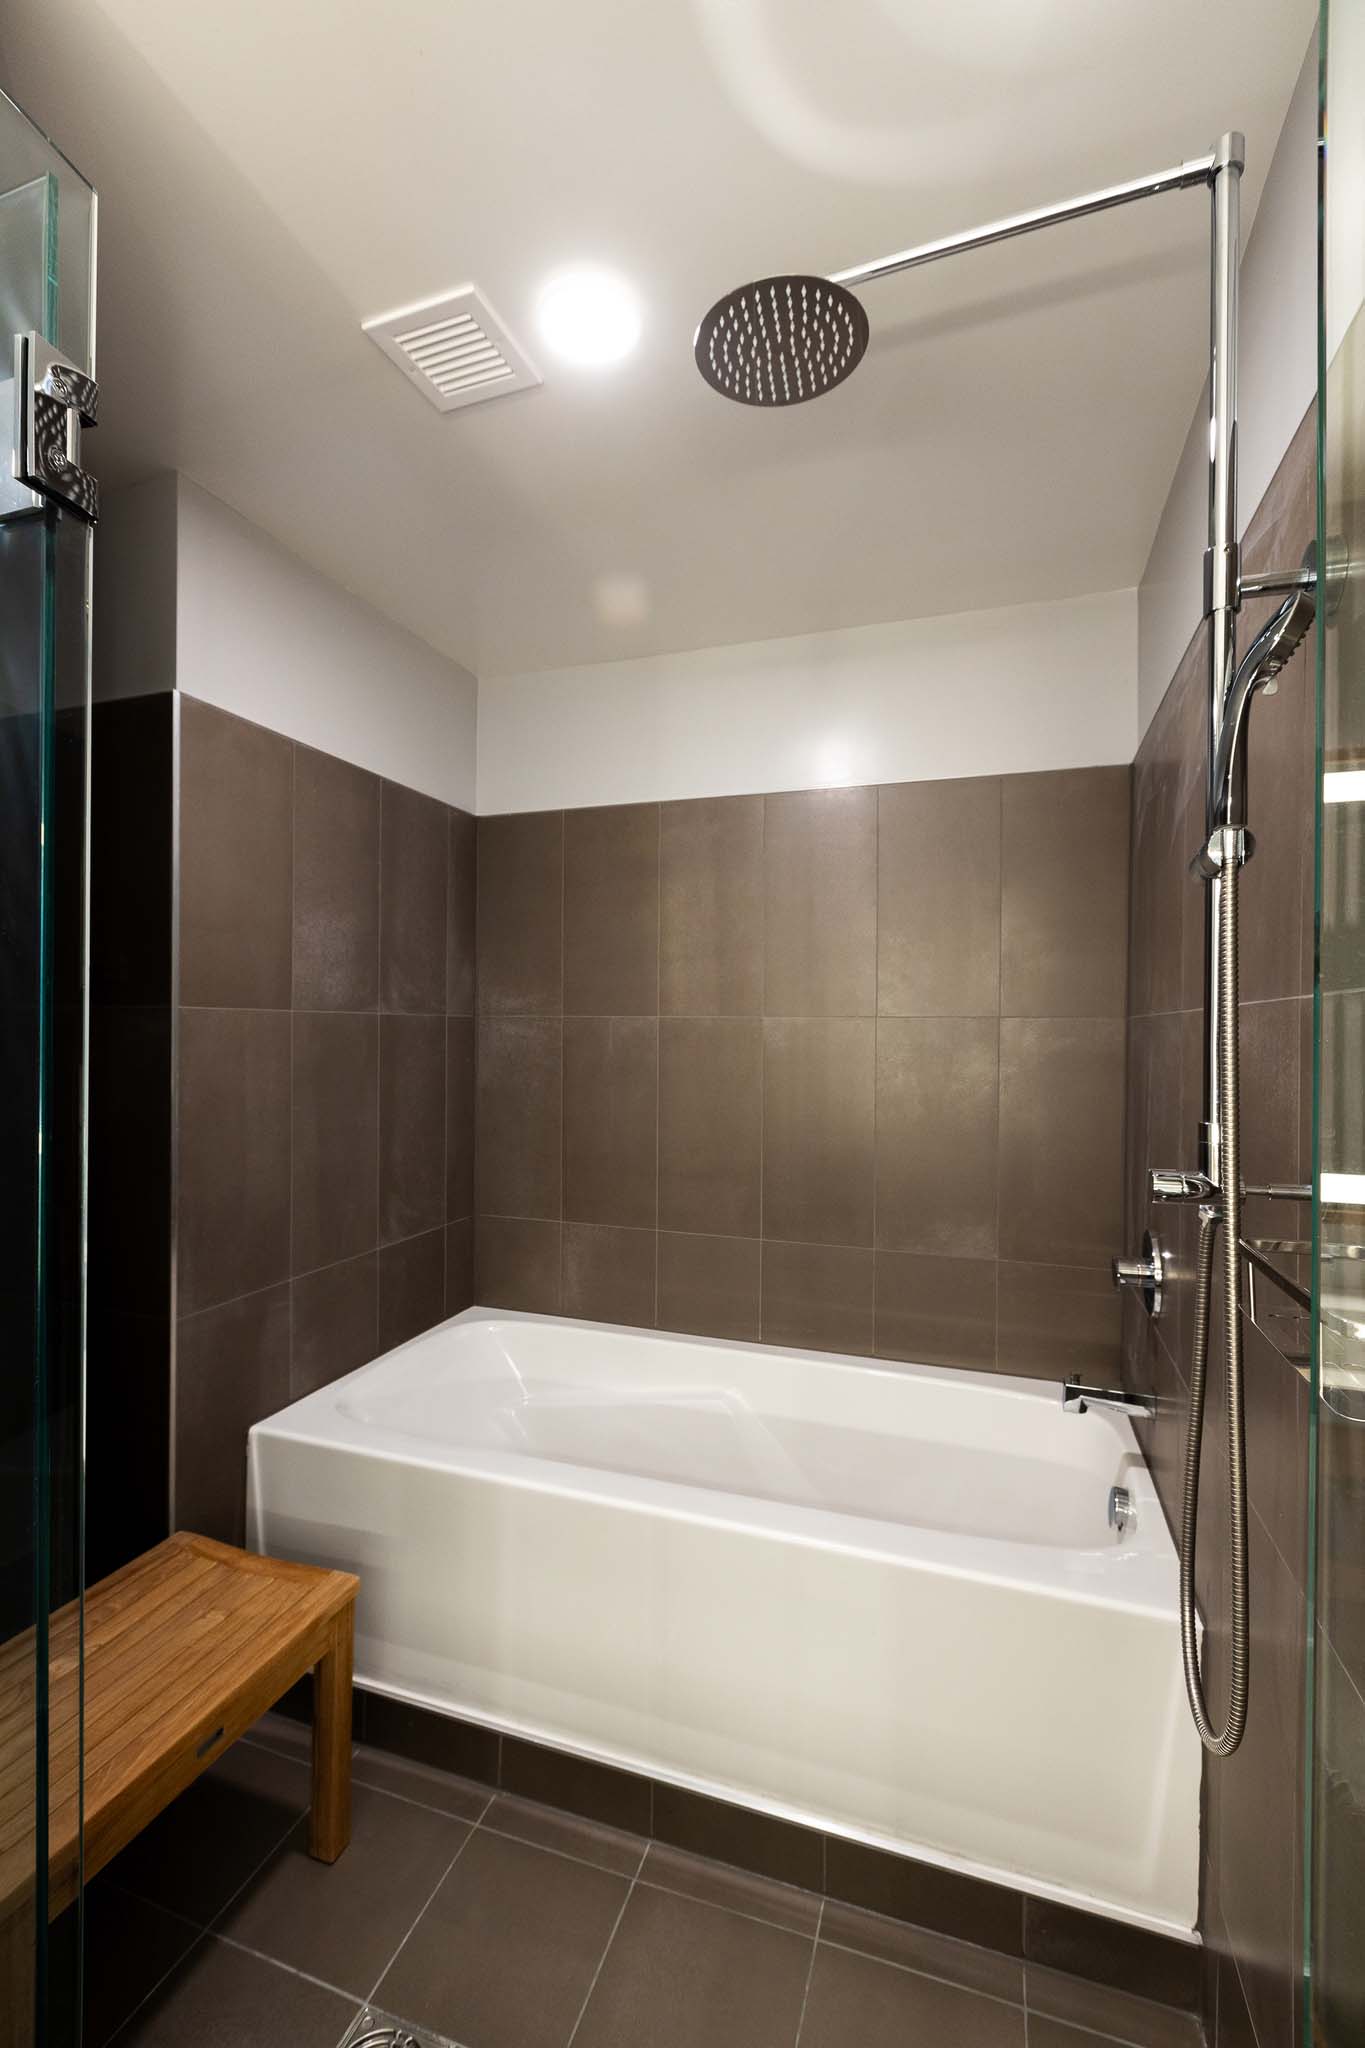 Hillsboro hotel japanese style soaking tub